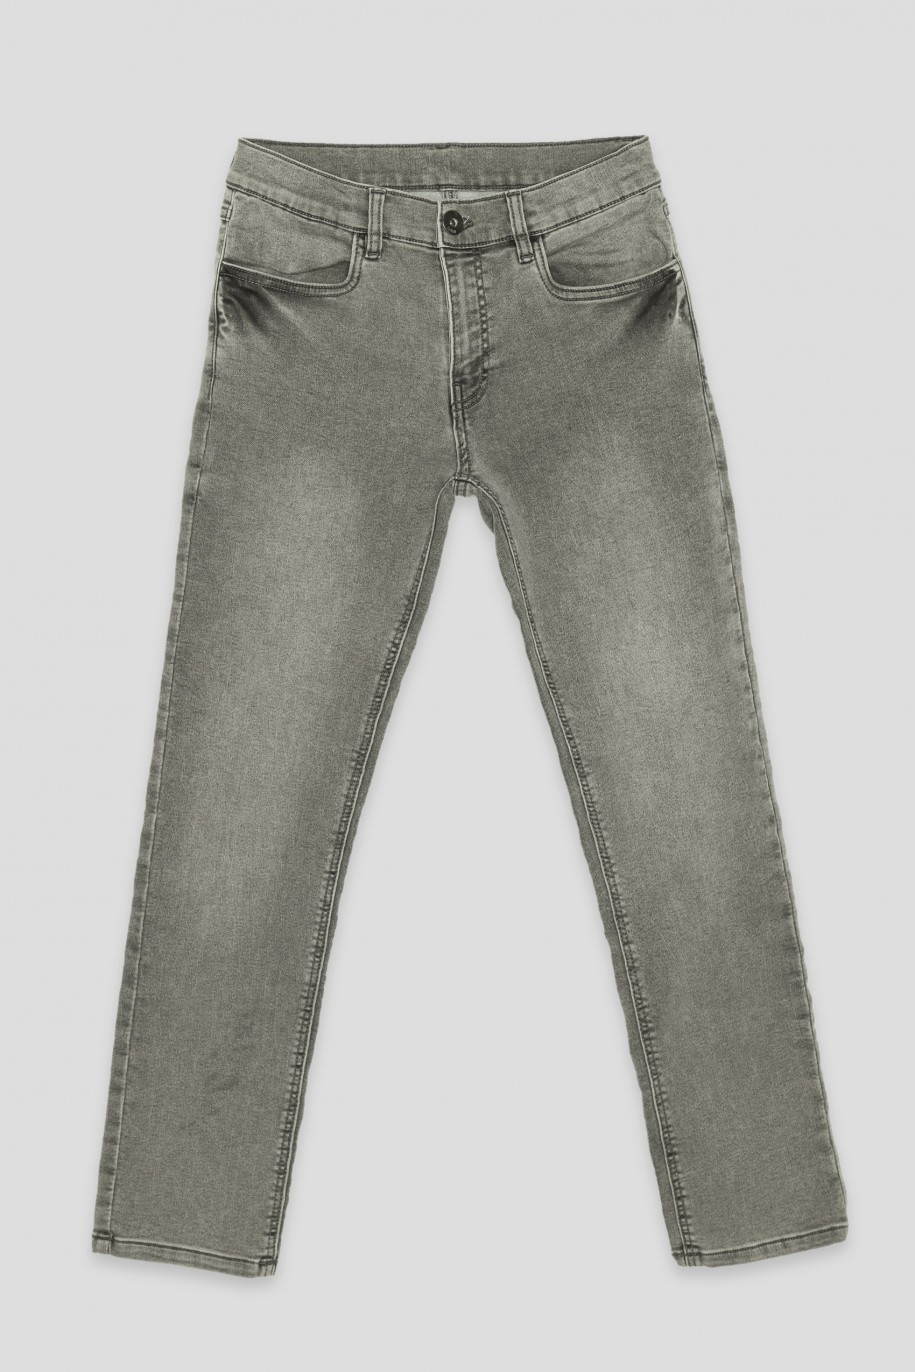 Szare proste jeansy - 40833